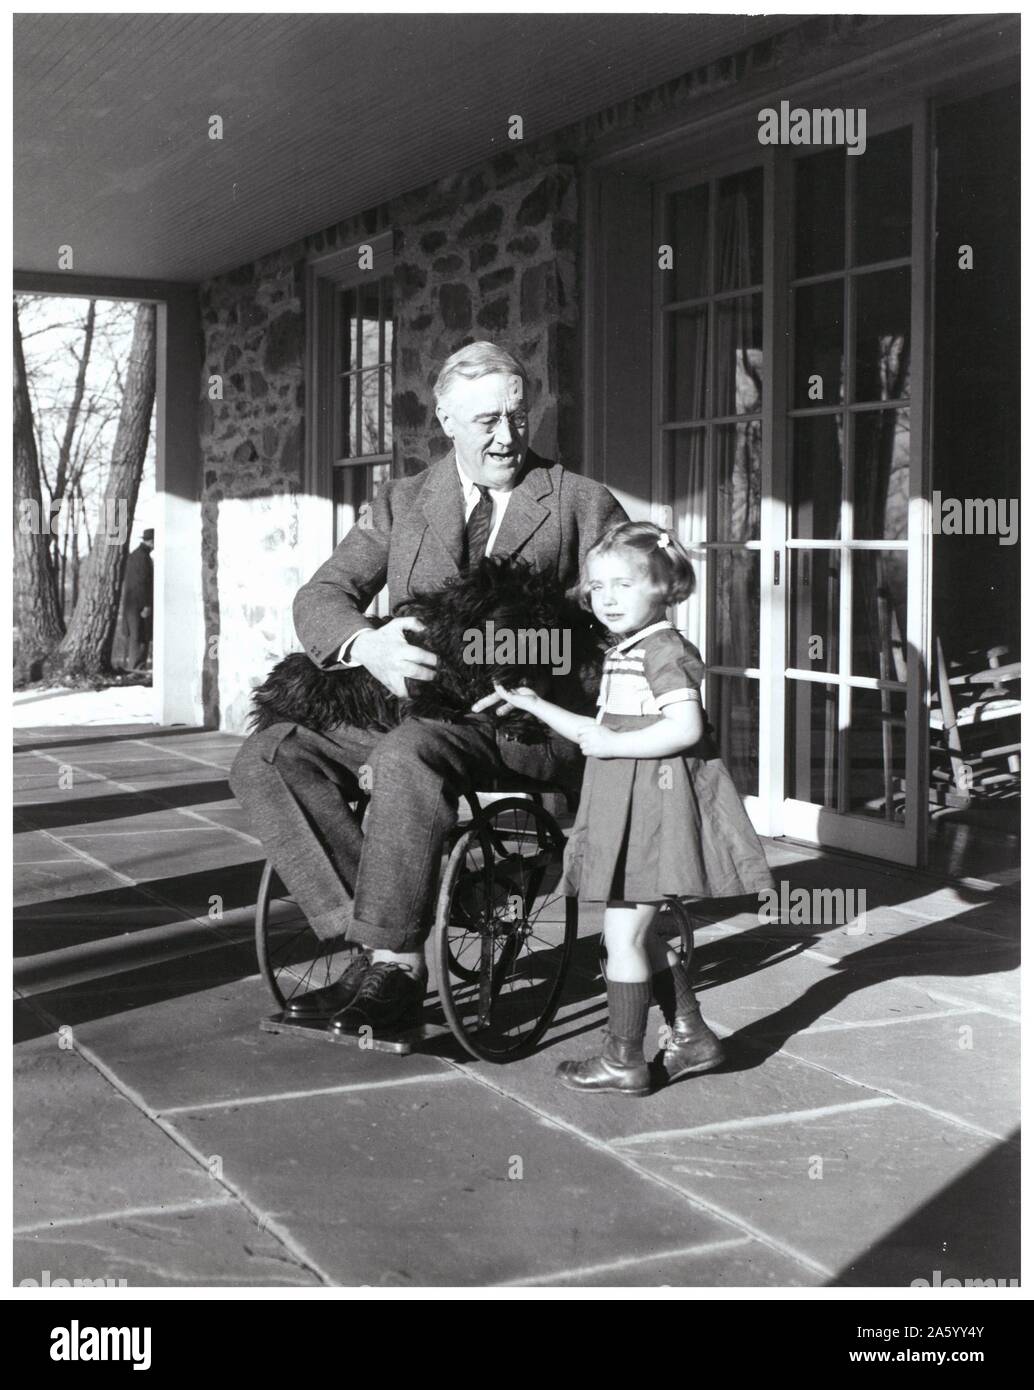 UNS Präsident Franklin d. Roosevelt seinen Hund als hält er sitzt auf einer Terrasse mit Ruthie Bie; Tochter eines Bediensteten 1938 Stockfoto